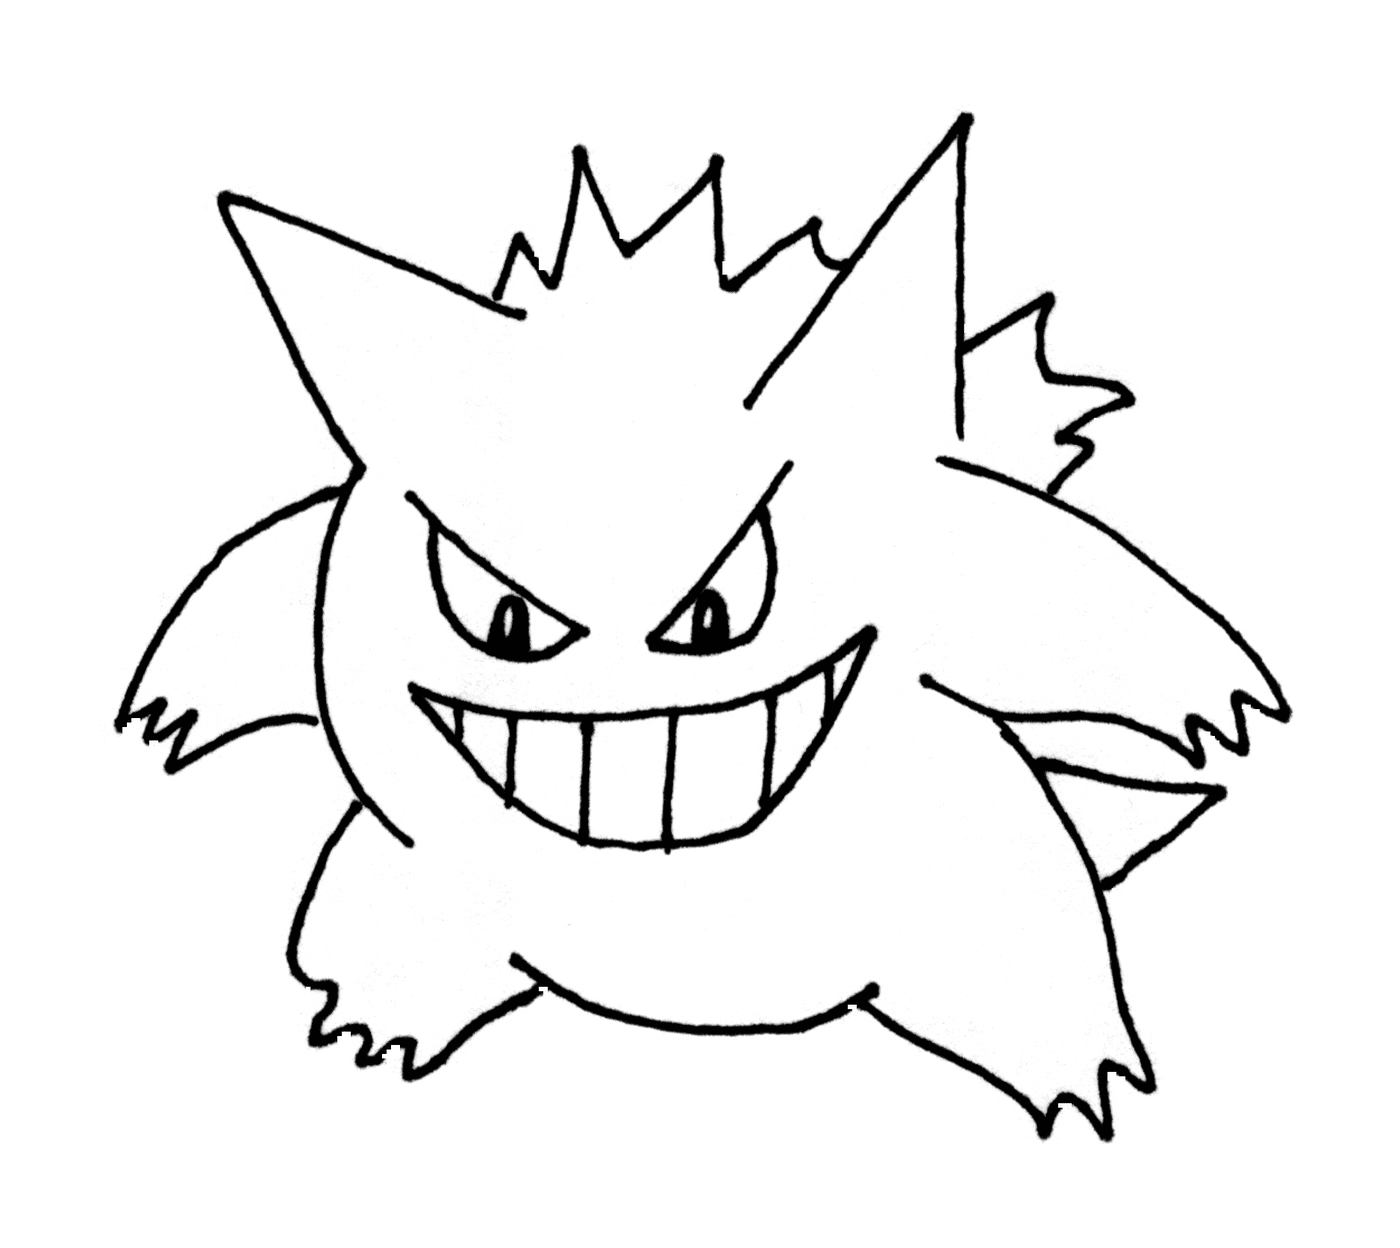  Gengar : Pokémon desenhado em preto 